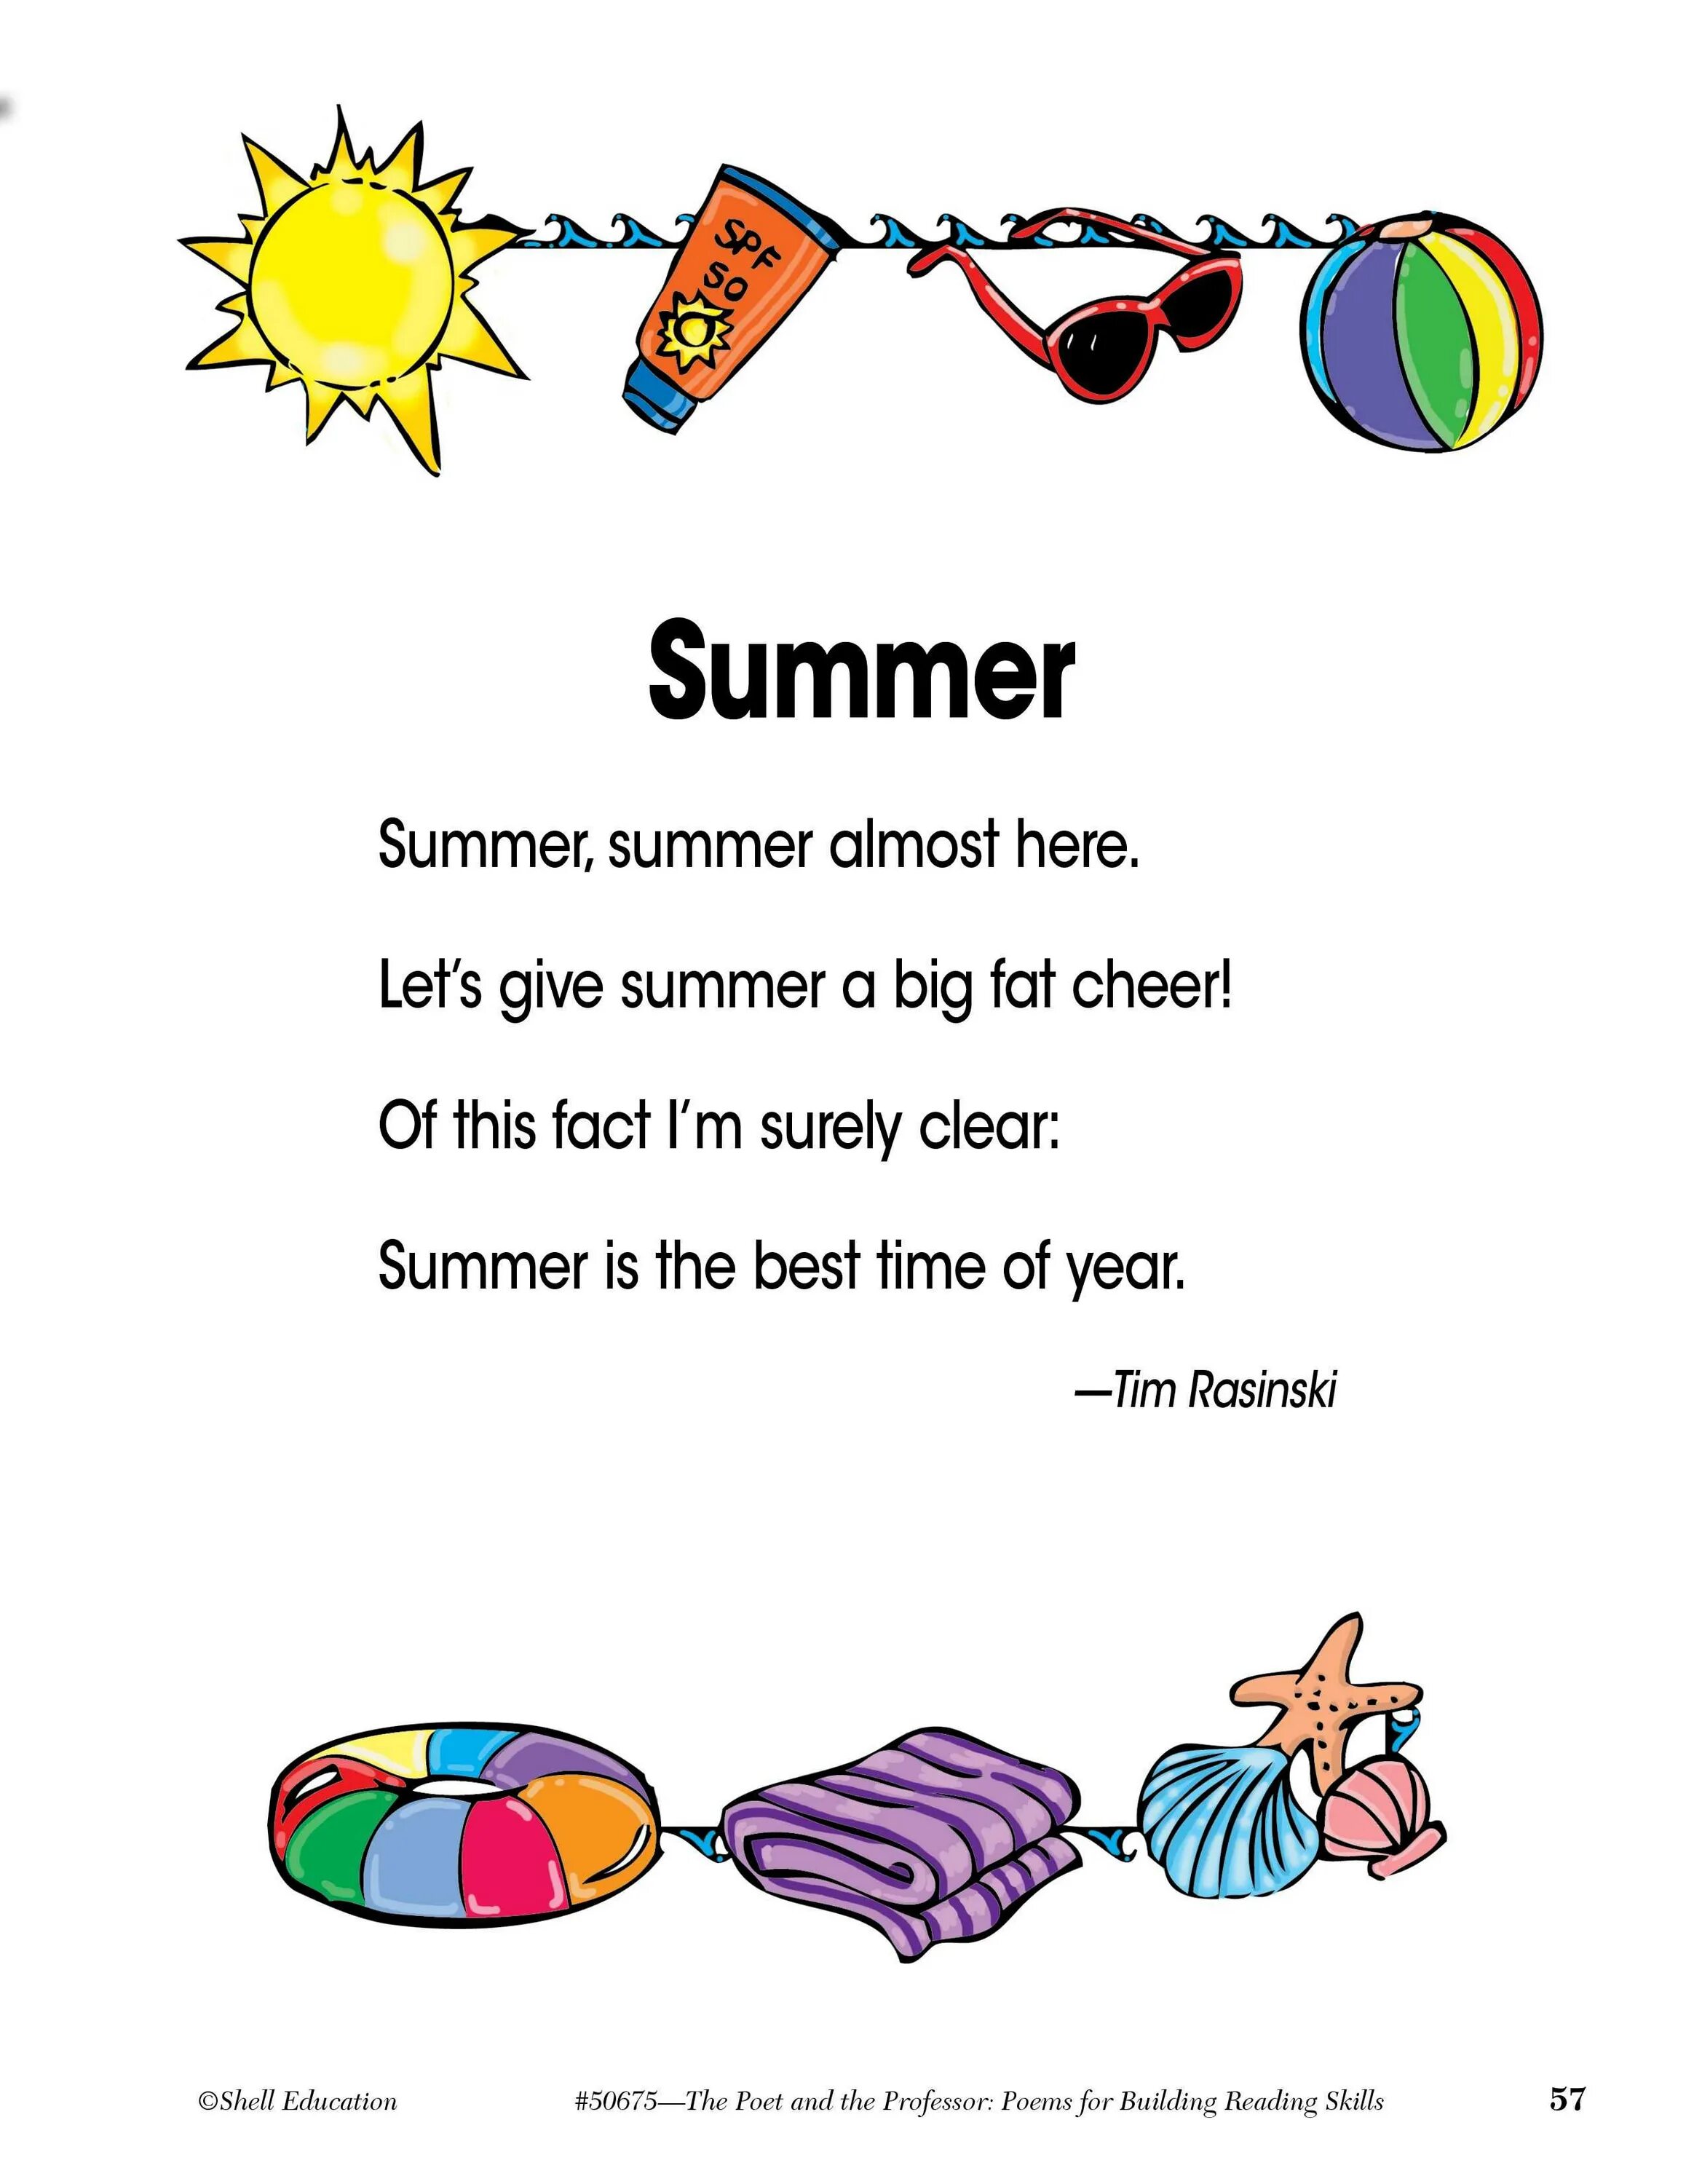 Лето по английски перевод. Стих про лето на английском. Стихотворение на английском языке. Стихи про лето на английском для детей. Стихотворение о лете на английском.